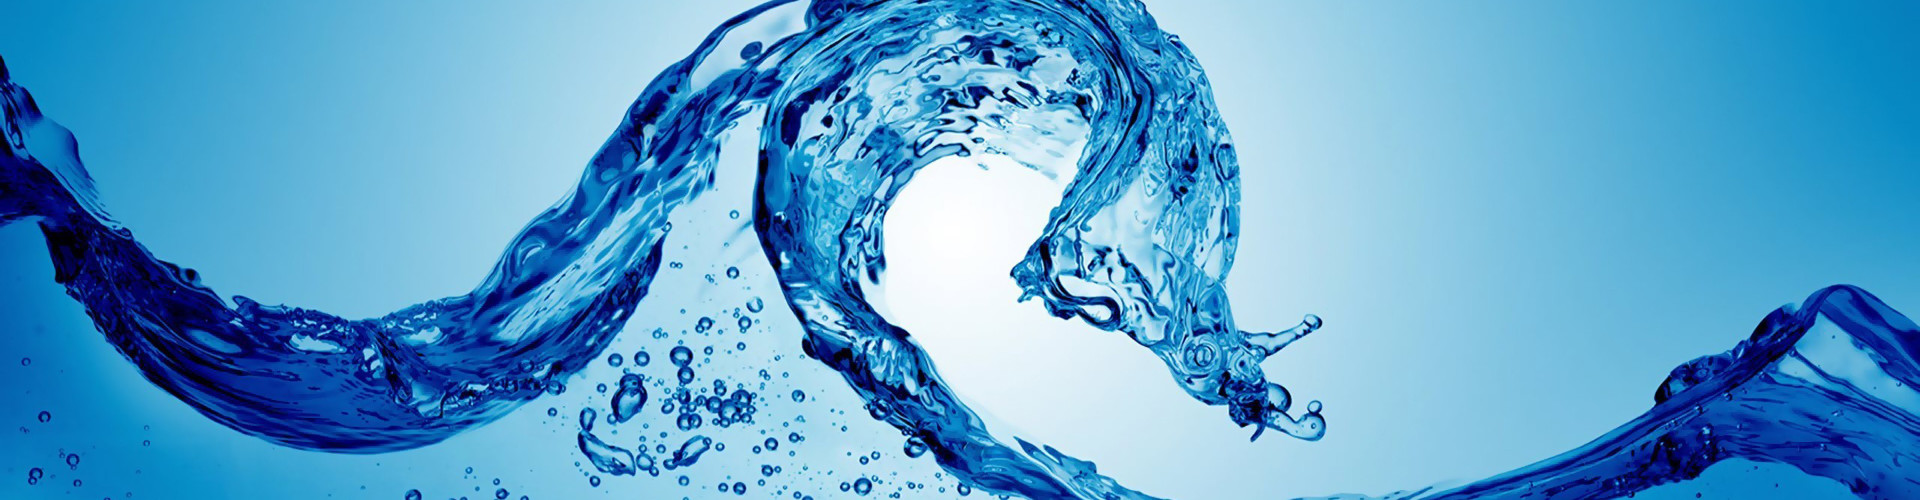 DMD - Trattamento acqua con biossido di cloro - Sistema anti legionella